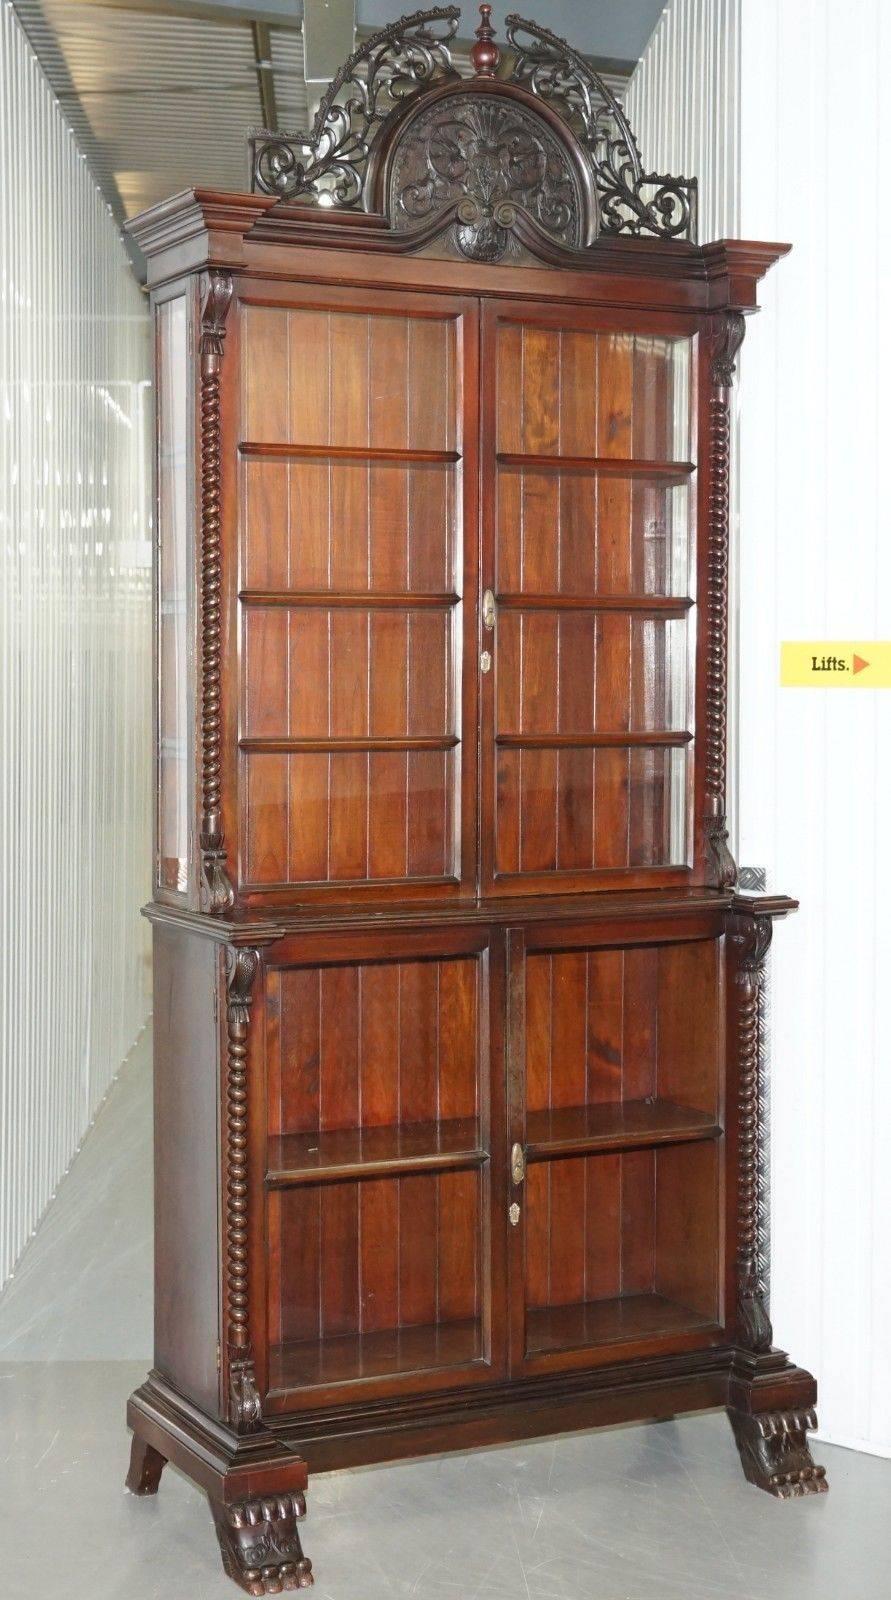 Wir freuen uns, dieses außergewöhnlich große und prächtige viktorianische handgeschnitzte Mahagoni-Bücherregal zum Verkauf anbieten zu können

Dieses Bücherregal ist eines der spektakulärsten Möbelstücke, die ich je gesehen habe. Die Schnitzerei